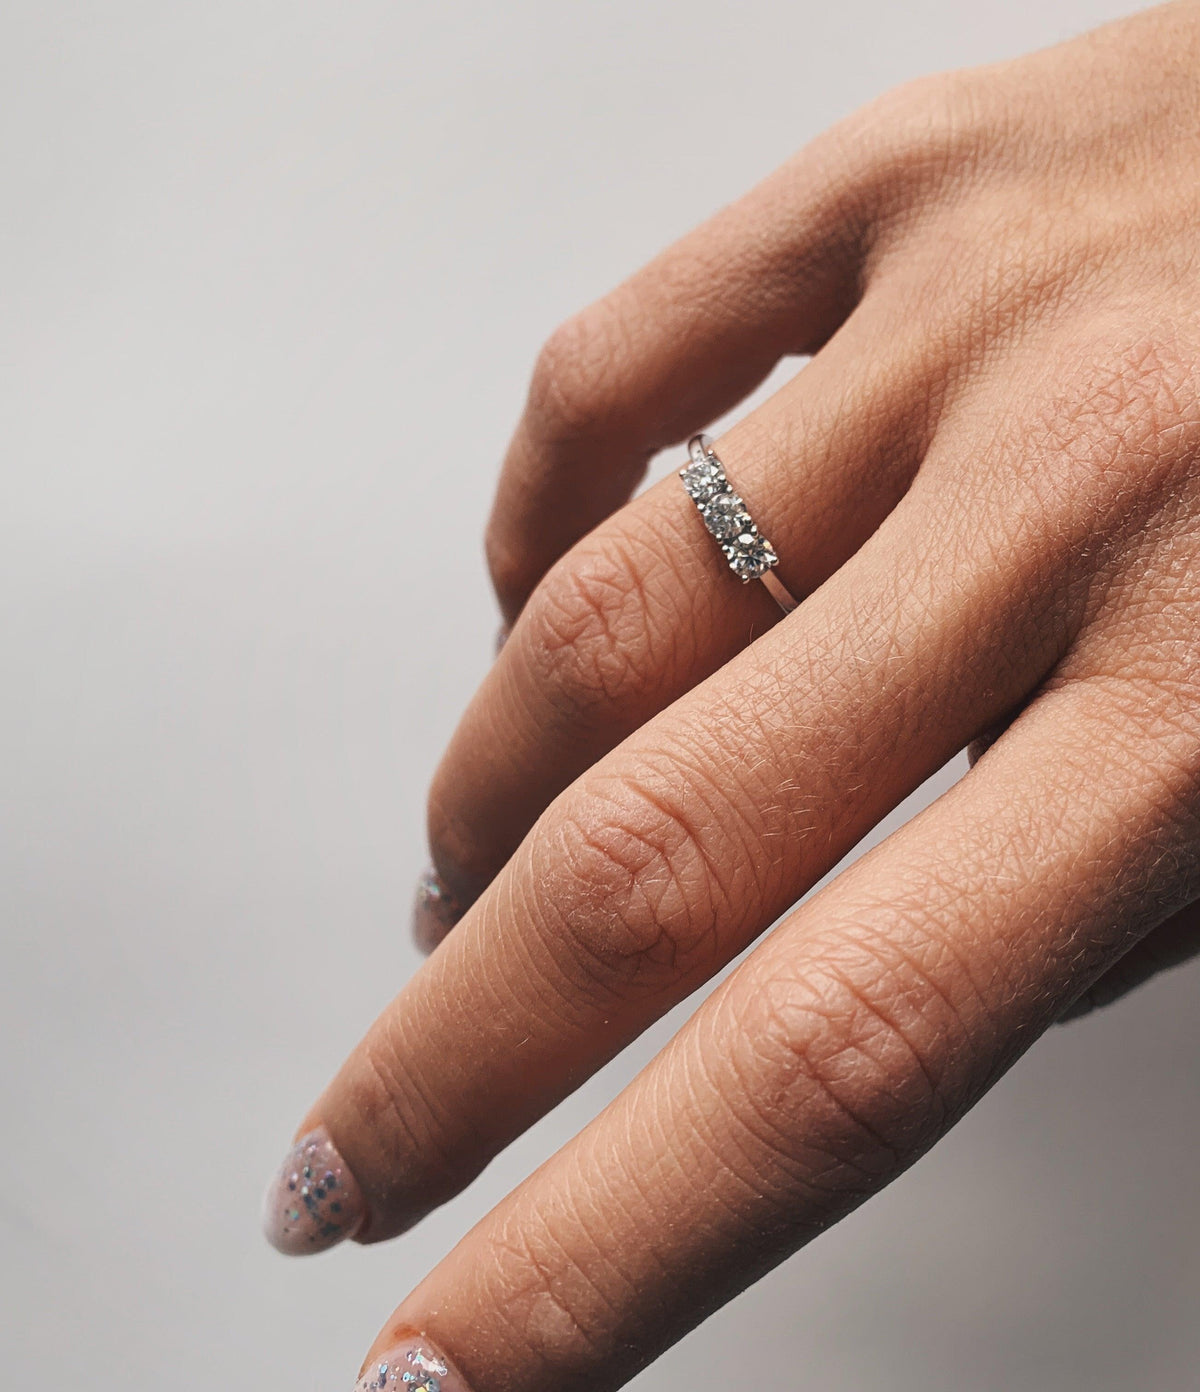 Moissanite White Gold Ring On A Woman's Finger